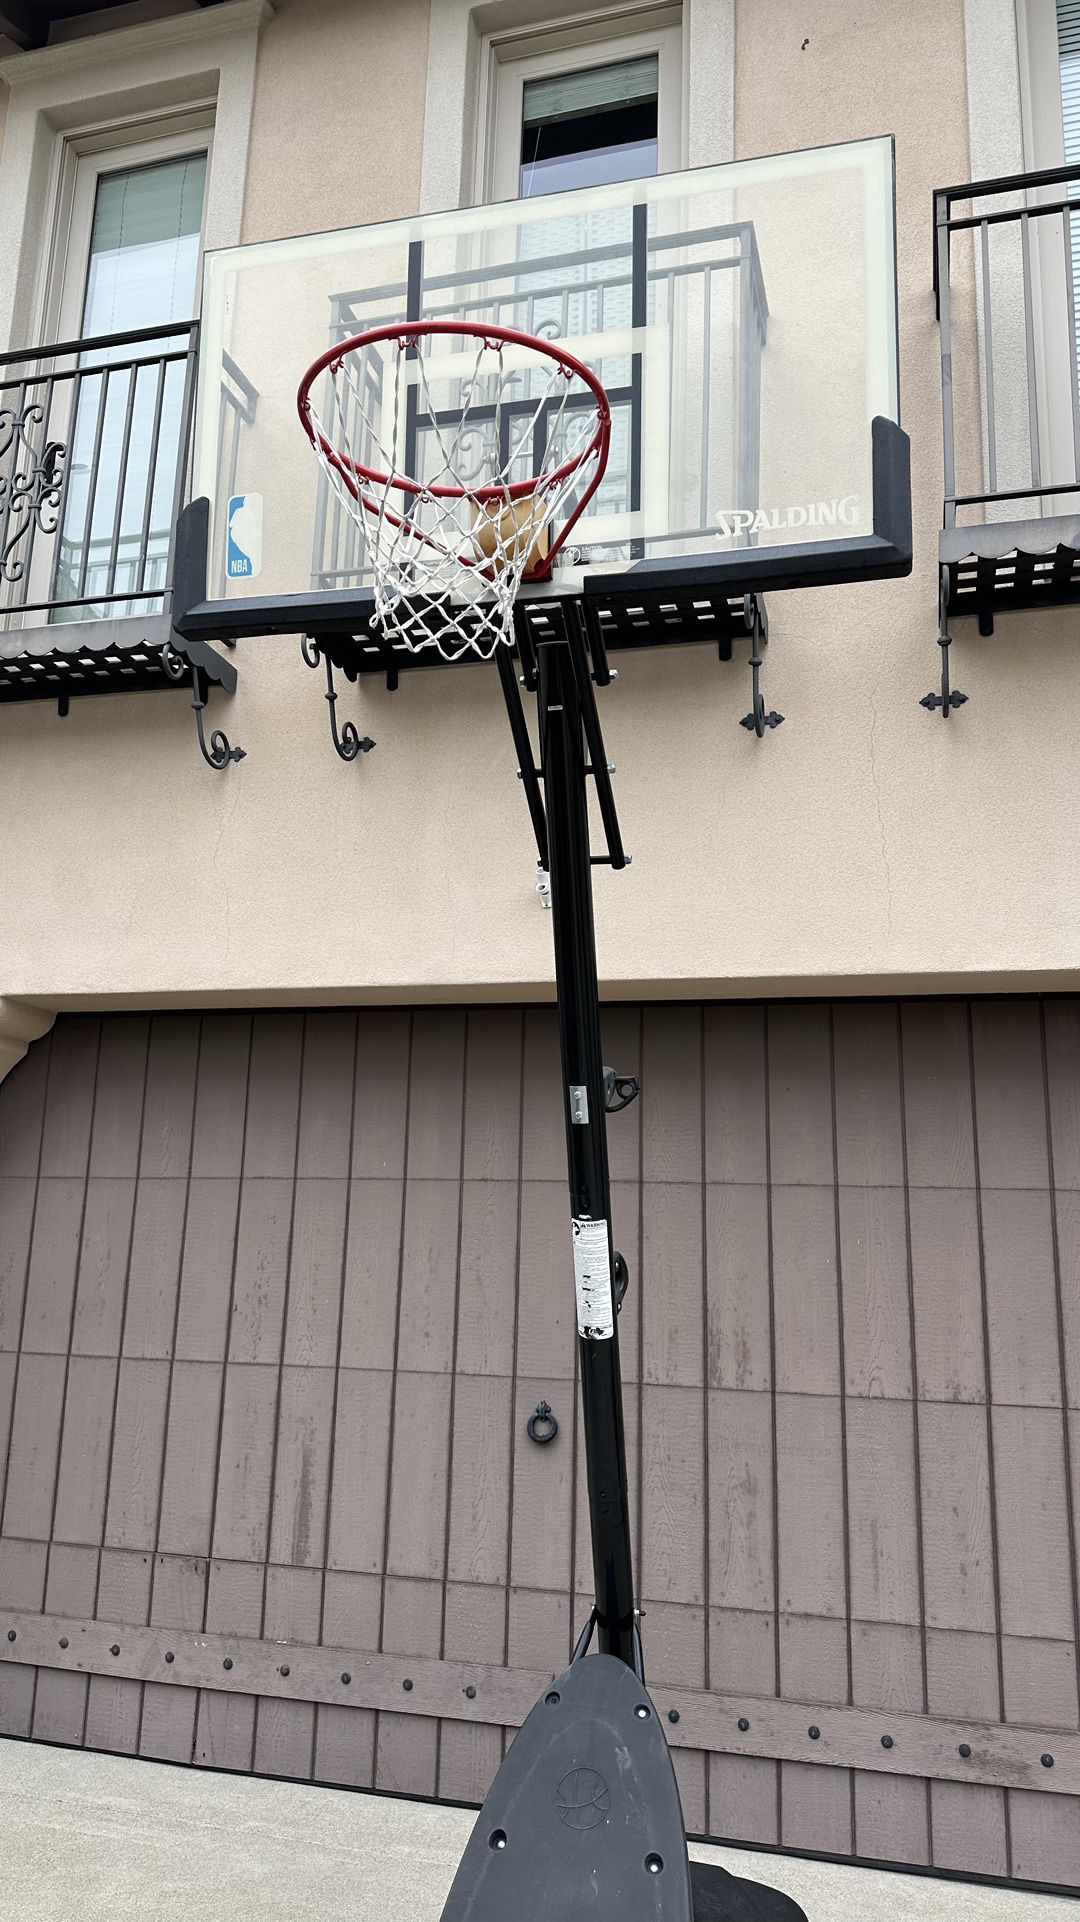 Spaulding Portable basketball Hoop